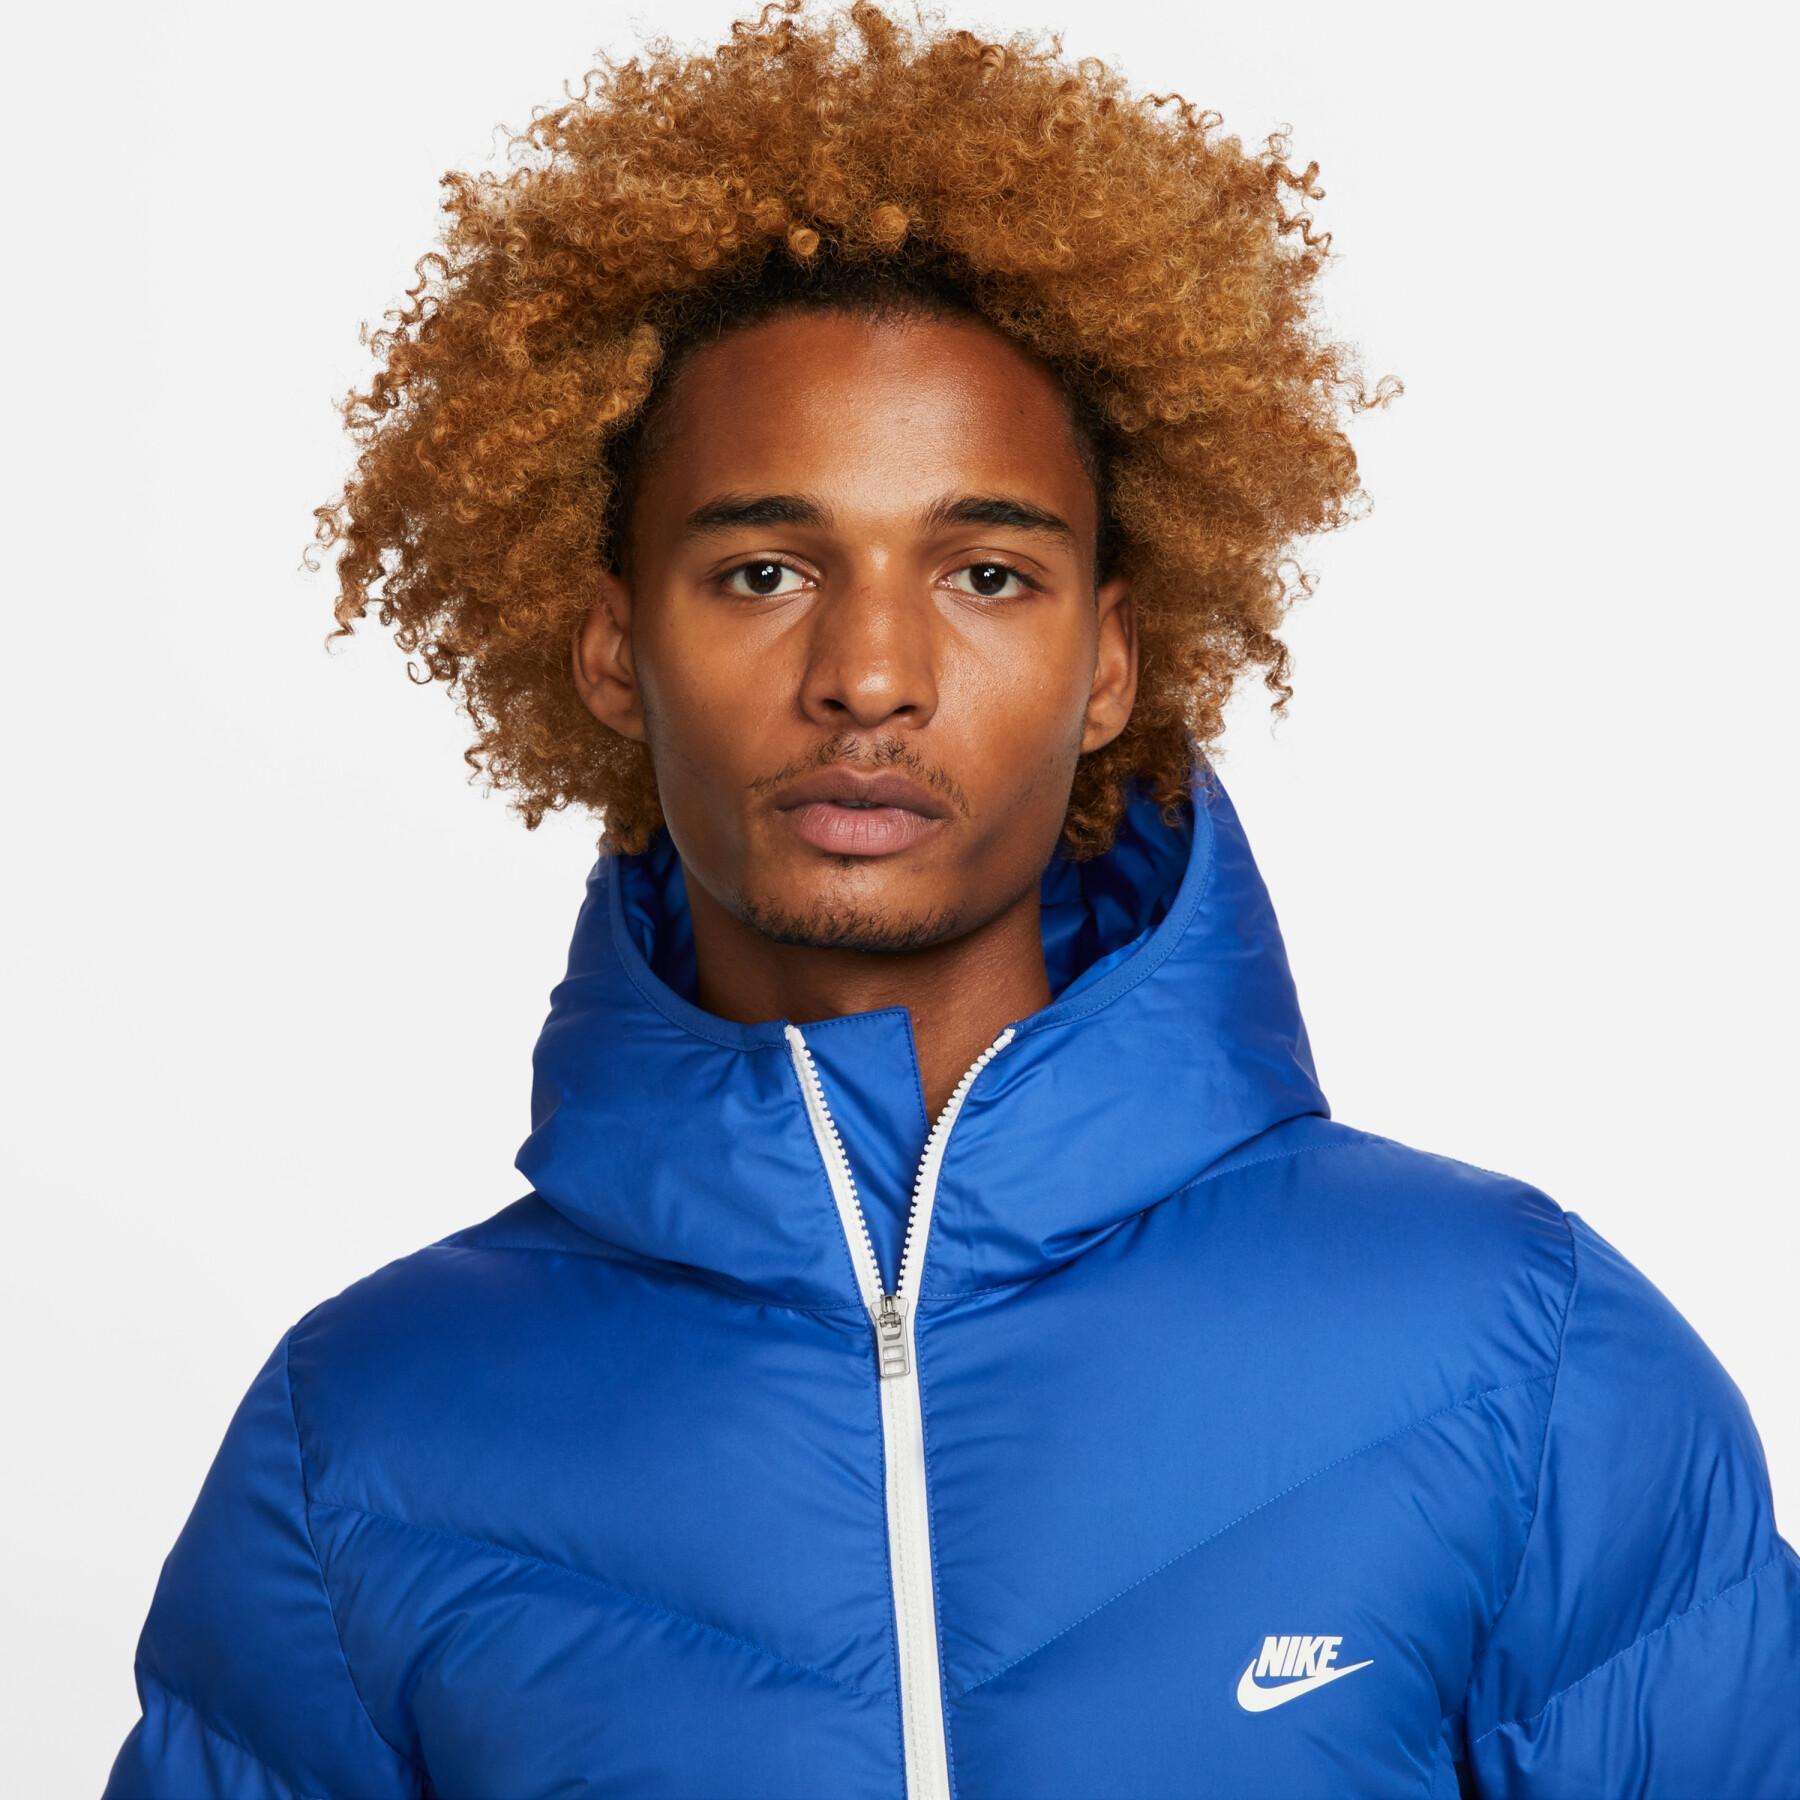 Down jacket Nike Sportswear Storm-FIT Windrunner